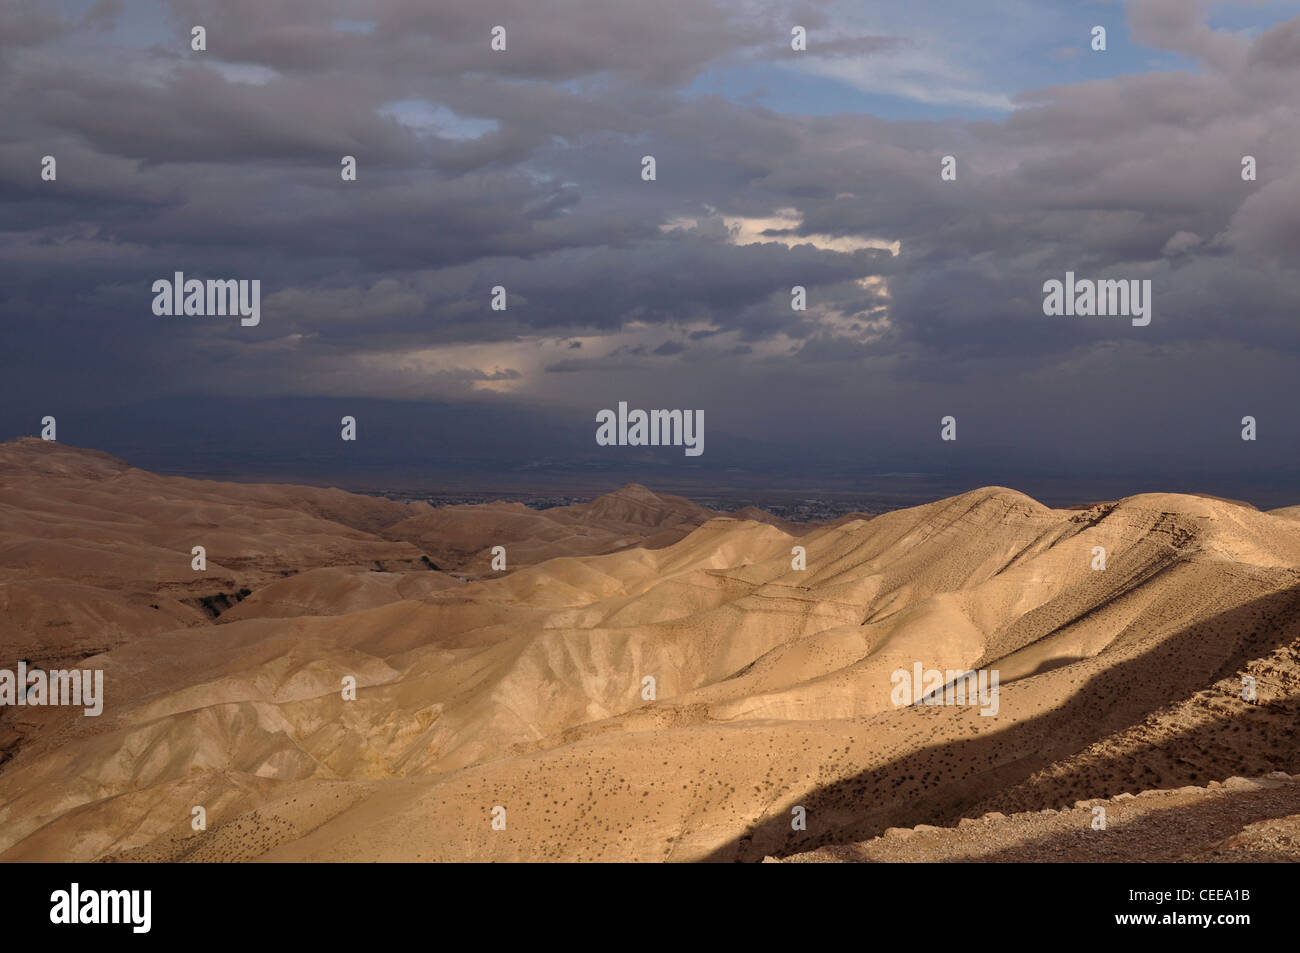 Judea desert panorama Stock Photo